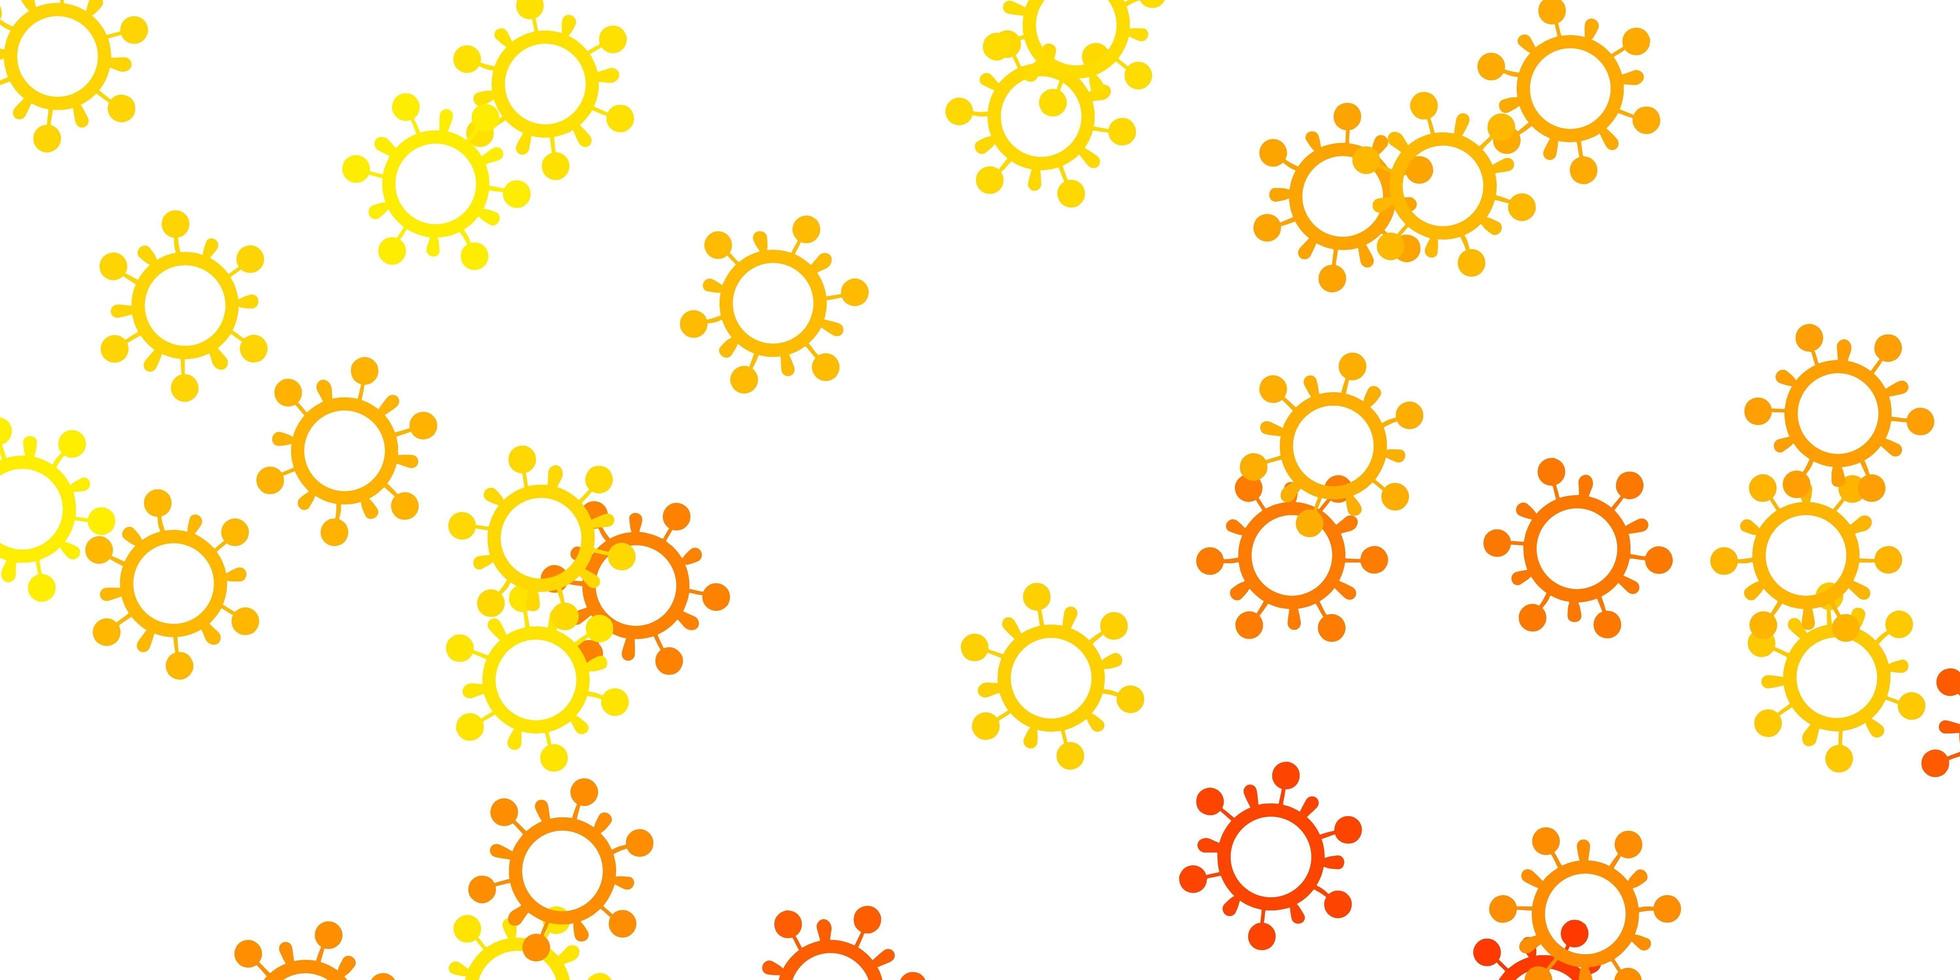 modèle vectoriel jaune clair avec des signes de grippe